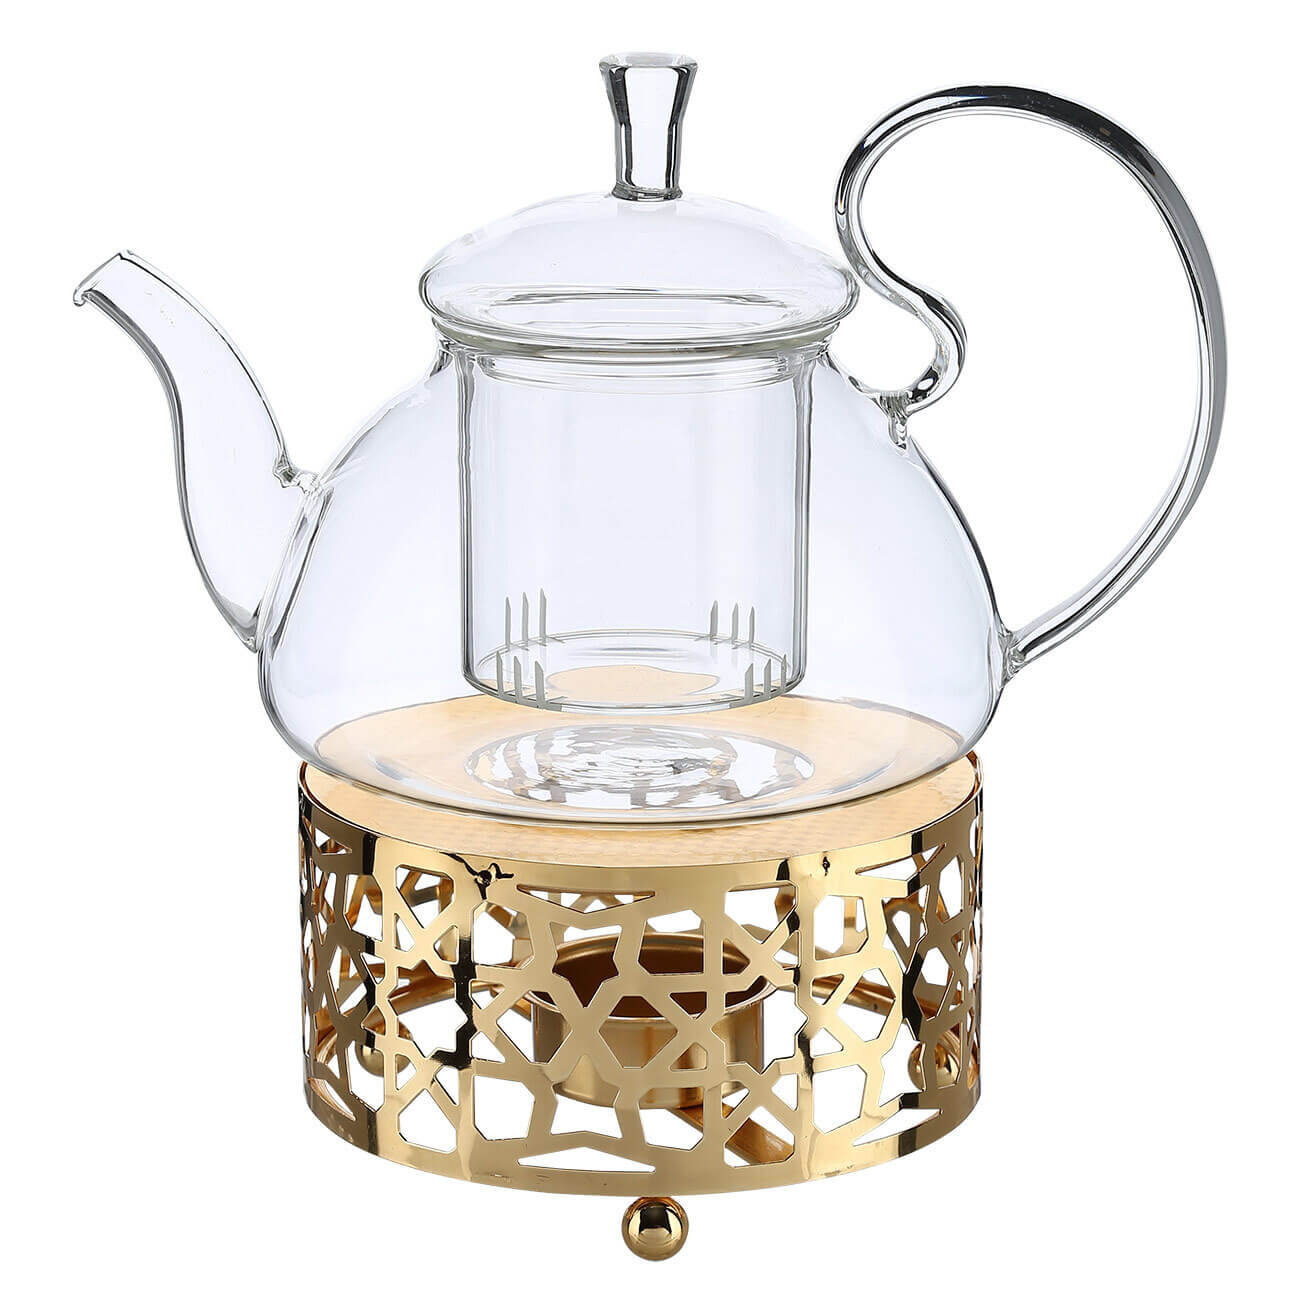 Чайник заварочный, 800 мл, с подогревом, стекло Б/металл, золотистый, Ellan kuchenland чайник заварочный 900 мл стекло б clear